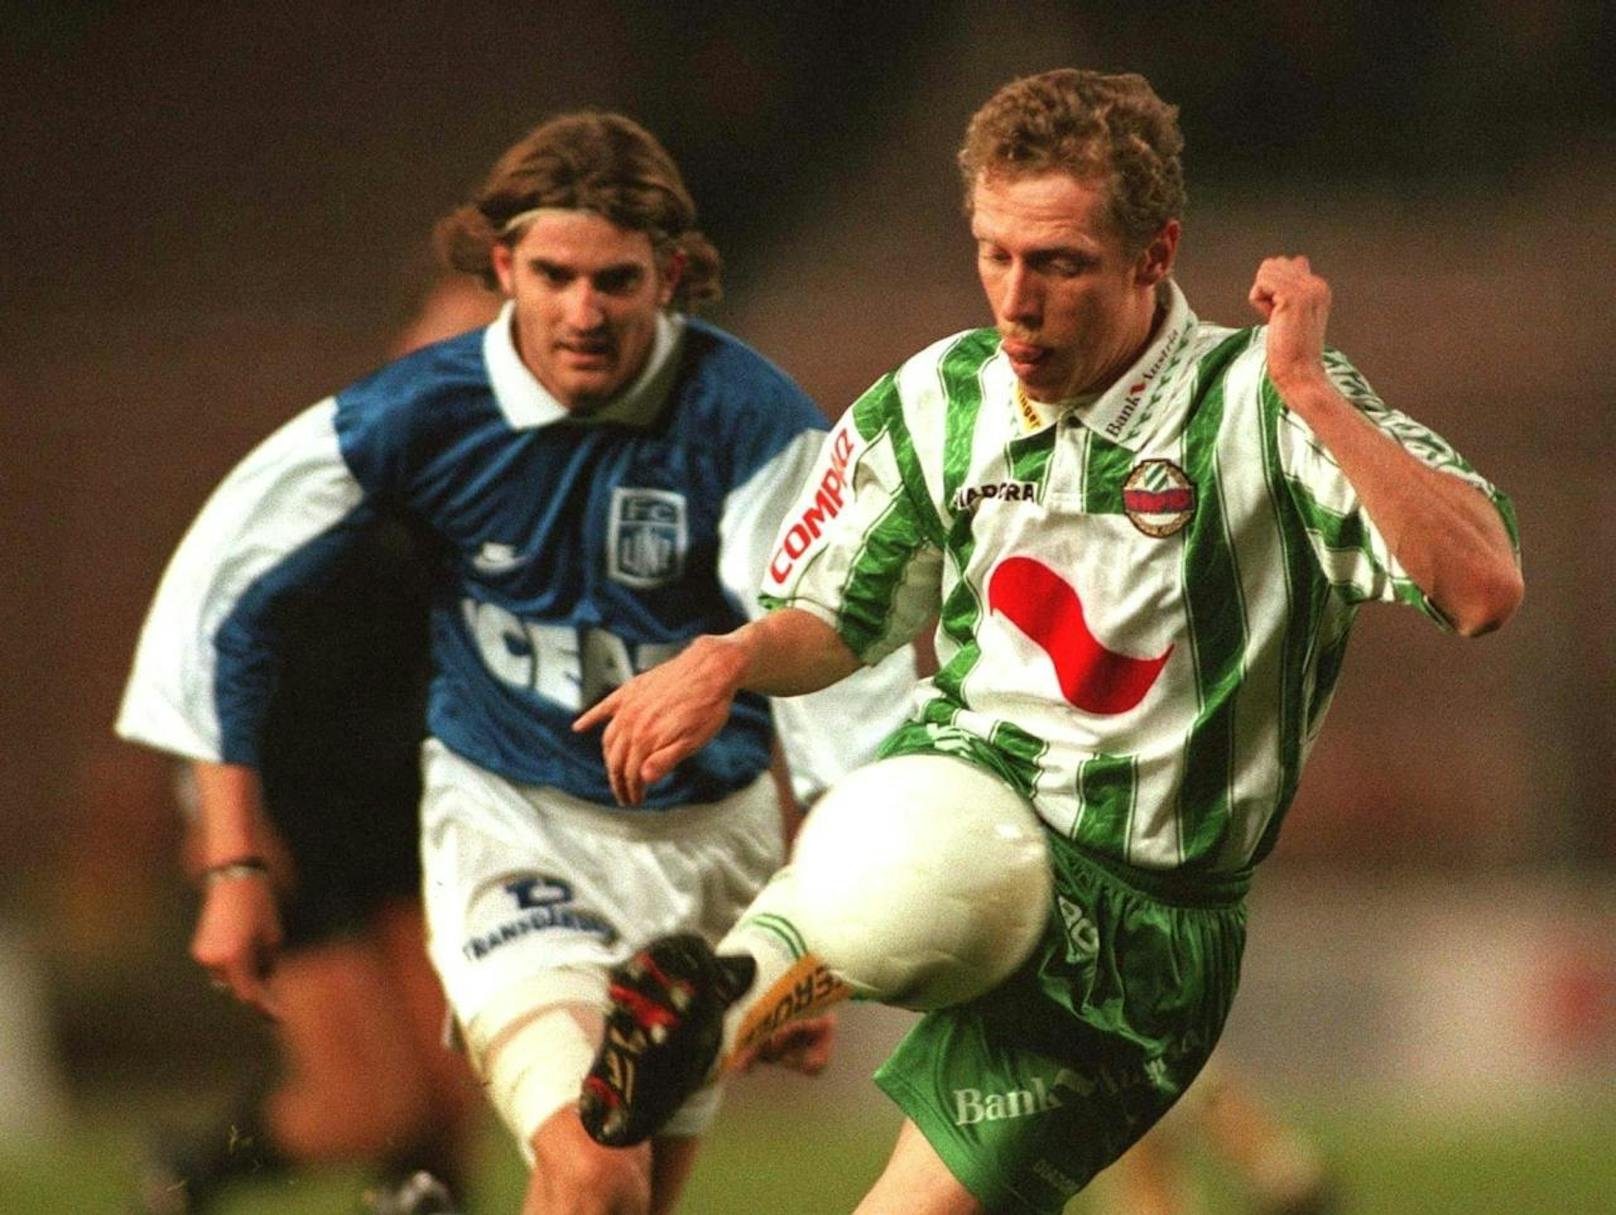 Nach einem Gastspiel in Tirol wechselt Stöger 1995 zum Austria-Erzrivalen Rapid Wien. Mit den Hütteldorfern wird er Meister und erreicht das Finale des Europacups der Cupsieger. 